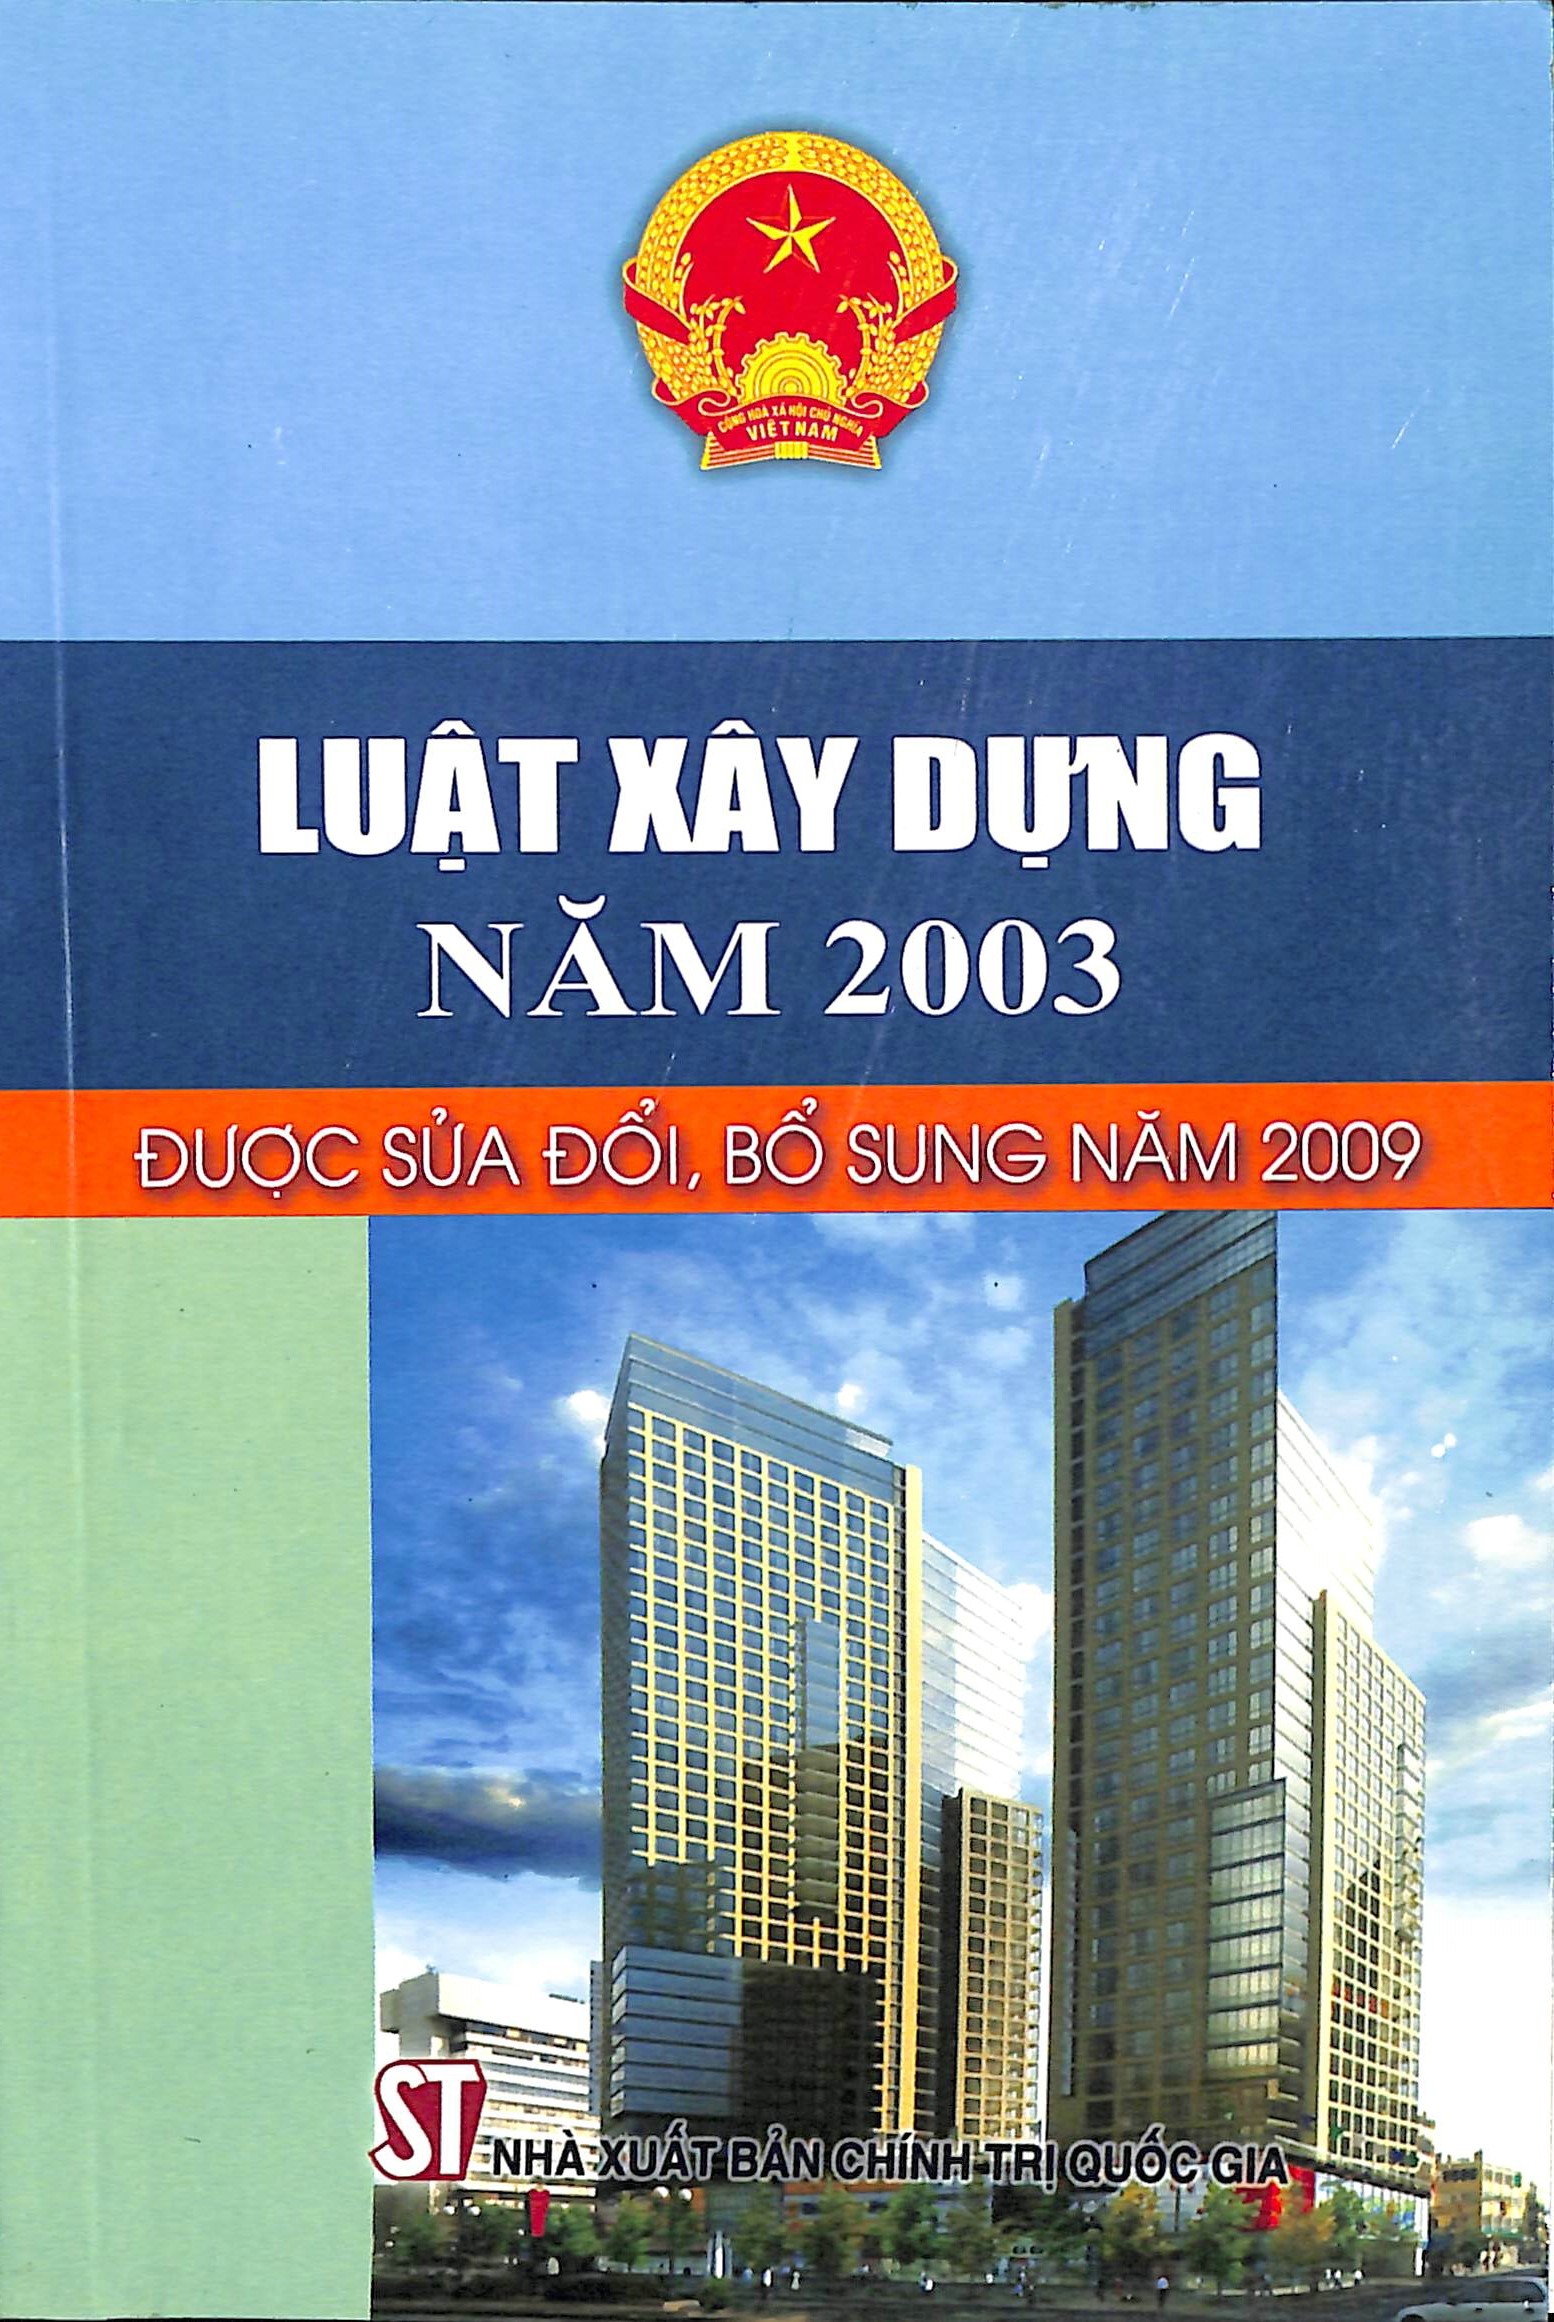 Luật xây dựng năm 2003 được sửa đổi, bổ sung năm 2009